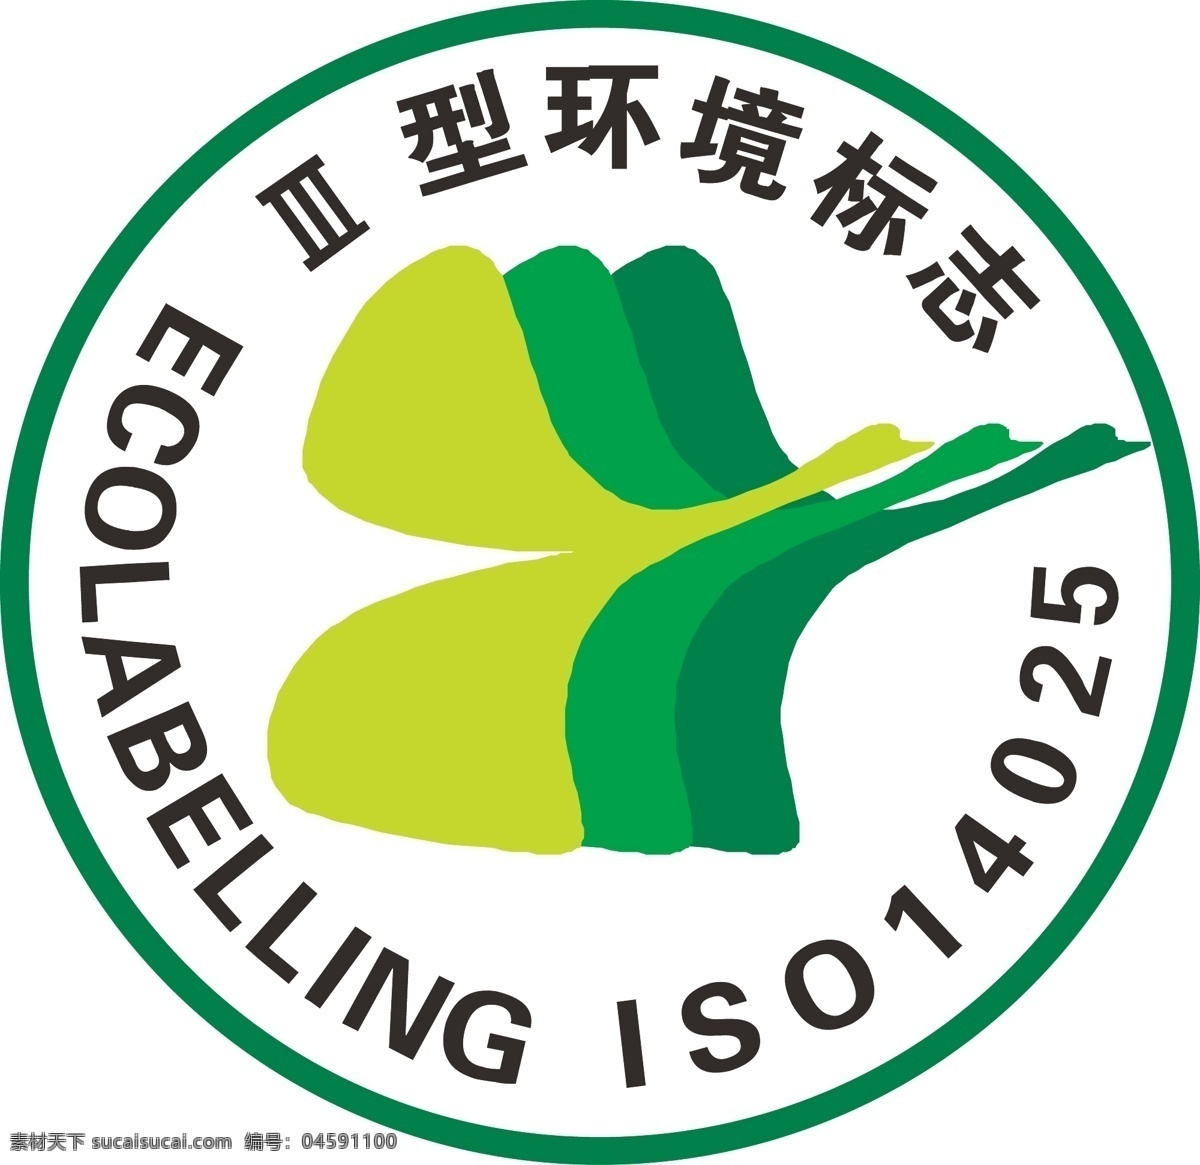 环境标志 环保色 黄绿 绿色 深绿 叶子 重叠 鹅飞舞 标志图标 公共标识标志